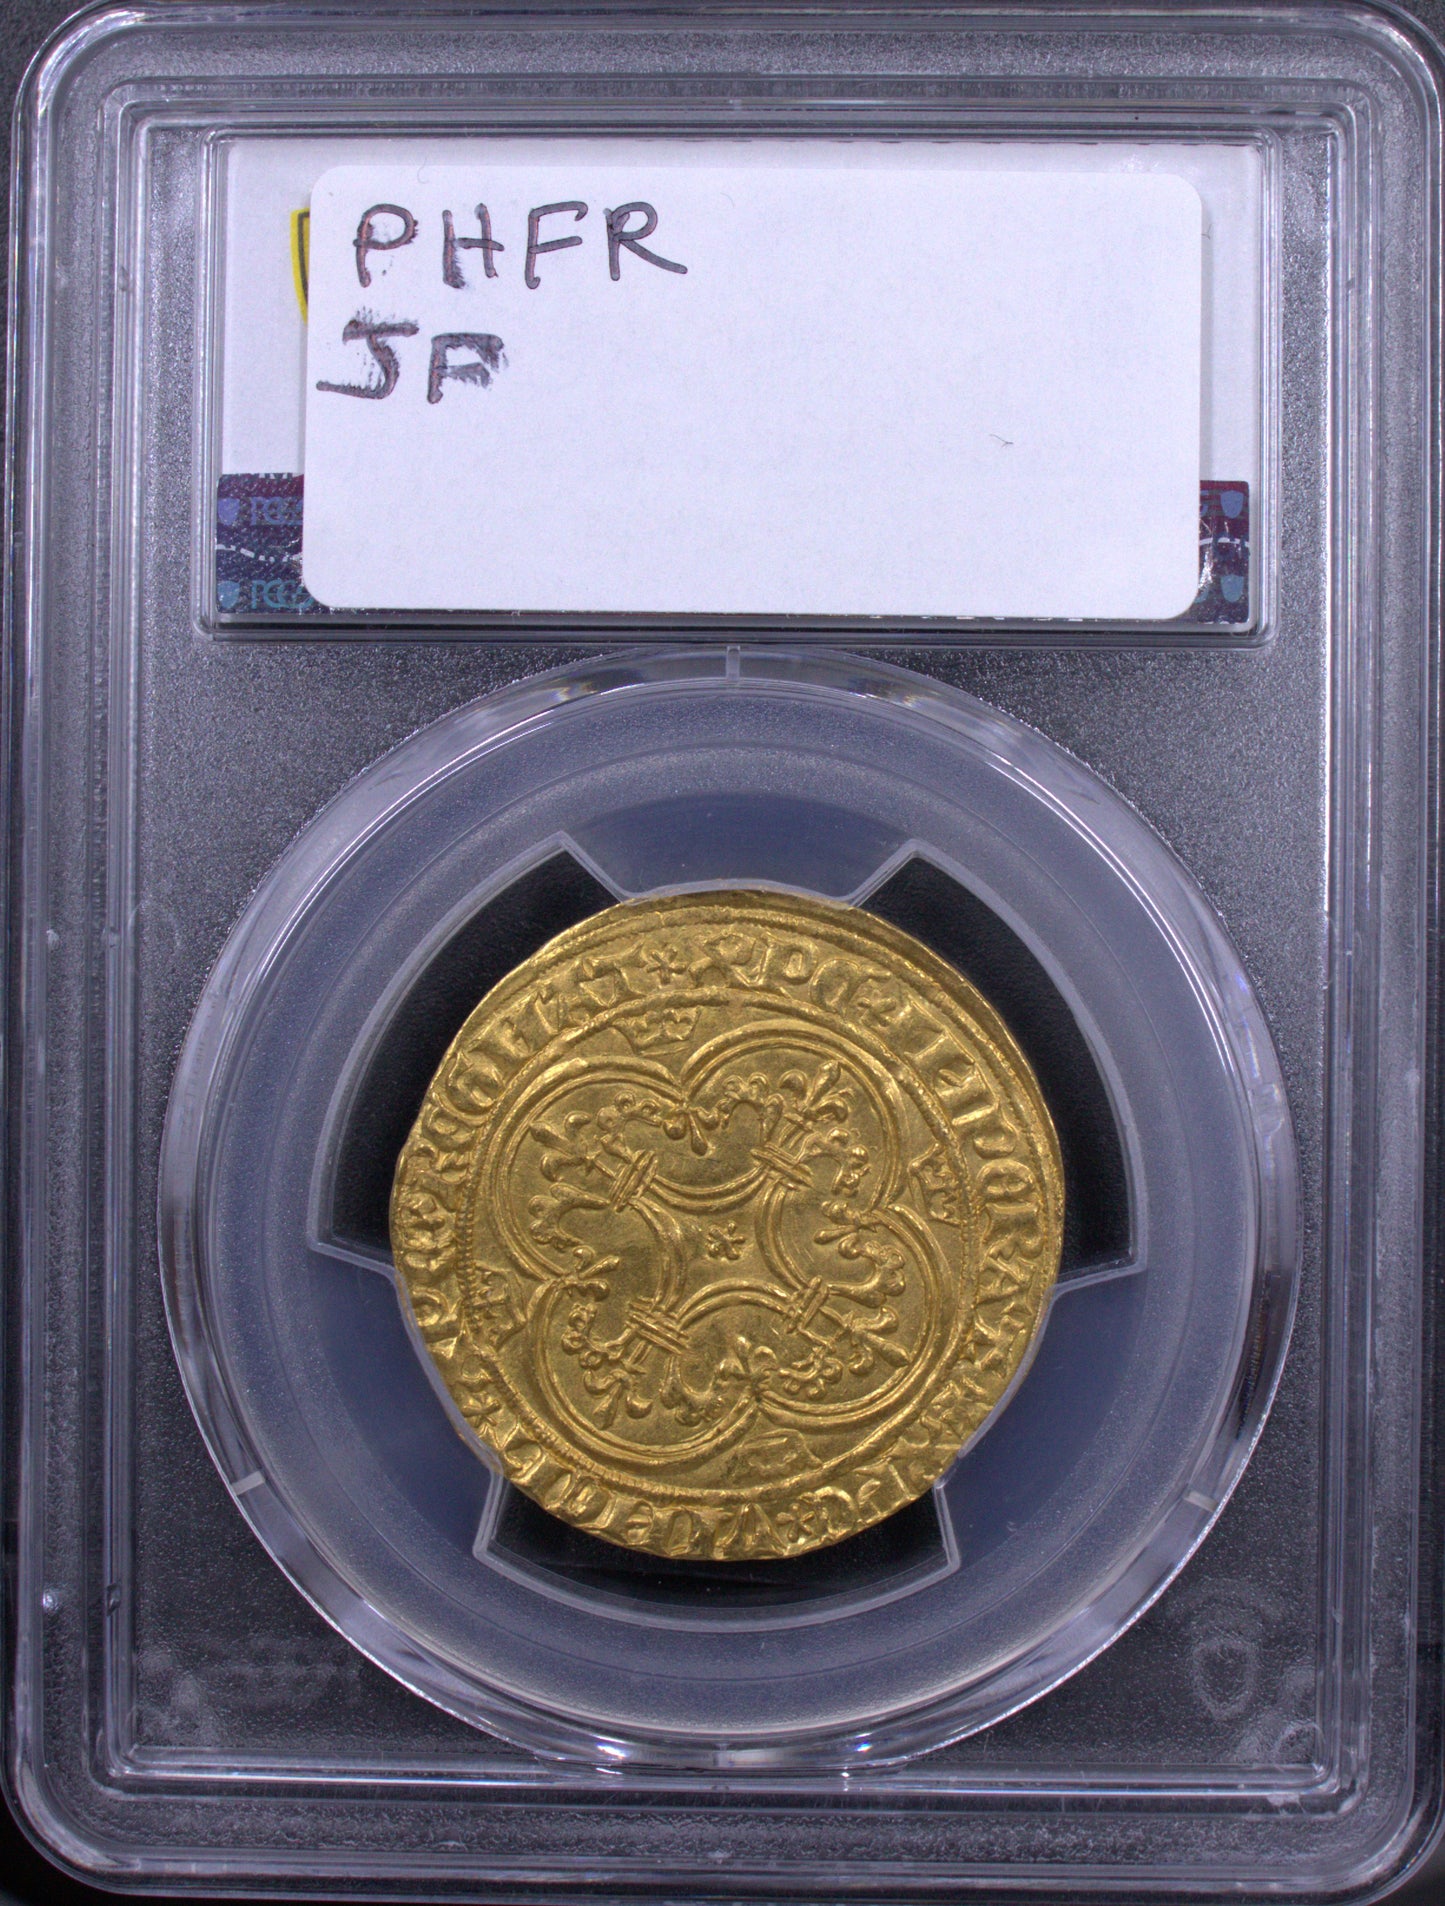 1380-1422 Francia Oro Ecu d'Or a la couronne PCGS MS62